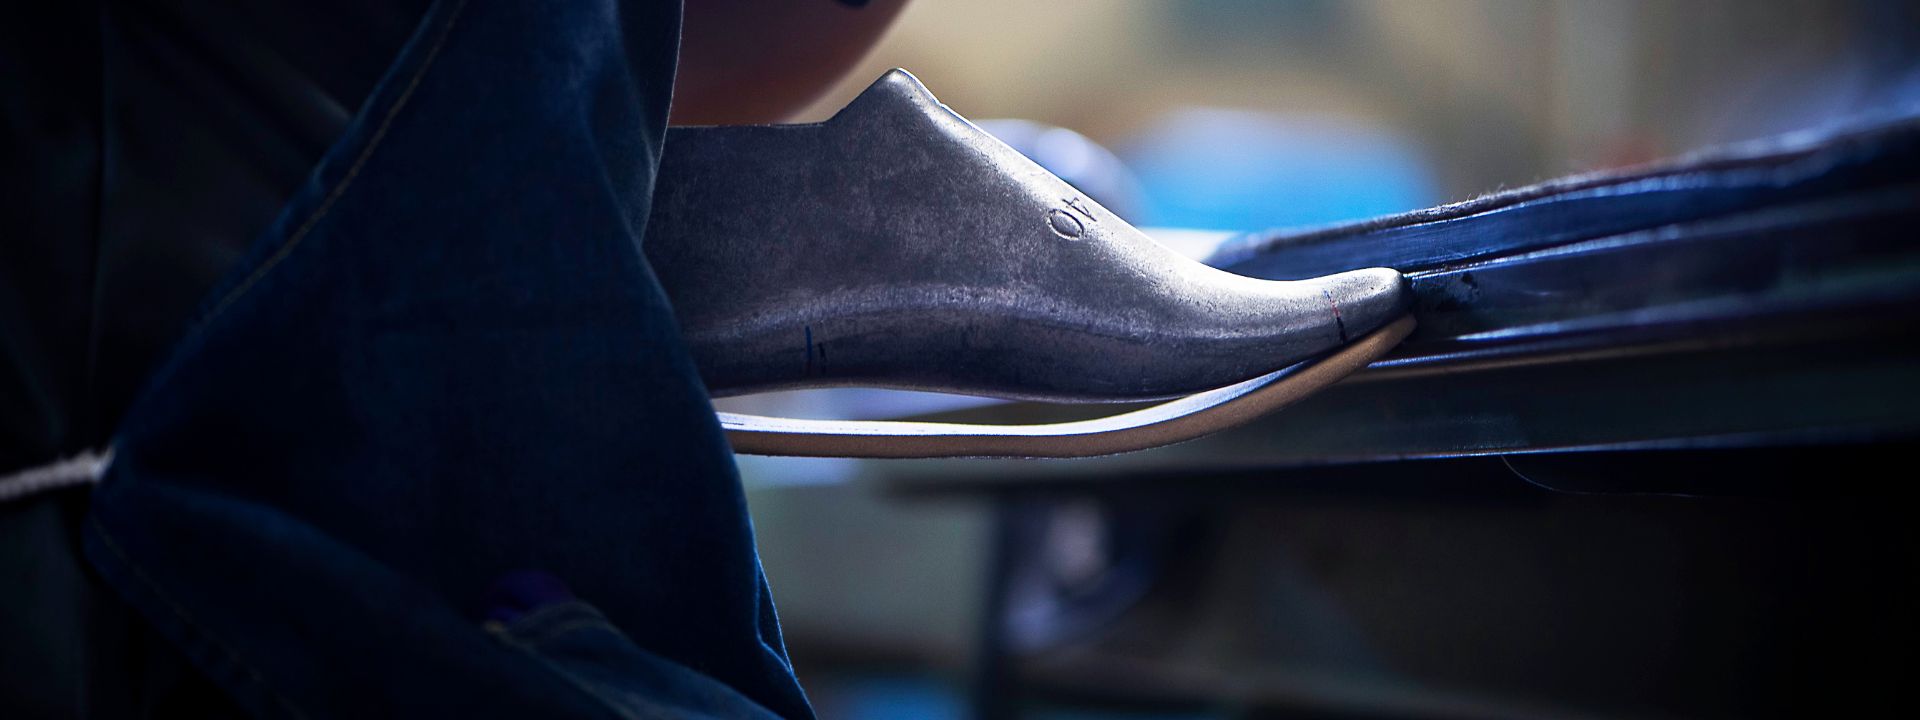 株式会社ダイマツ（DAIMATU）は、革靴・スニーカー・シューズ・サンダルなどの製造をしています。